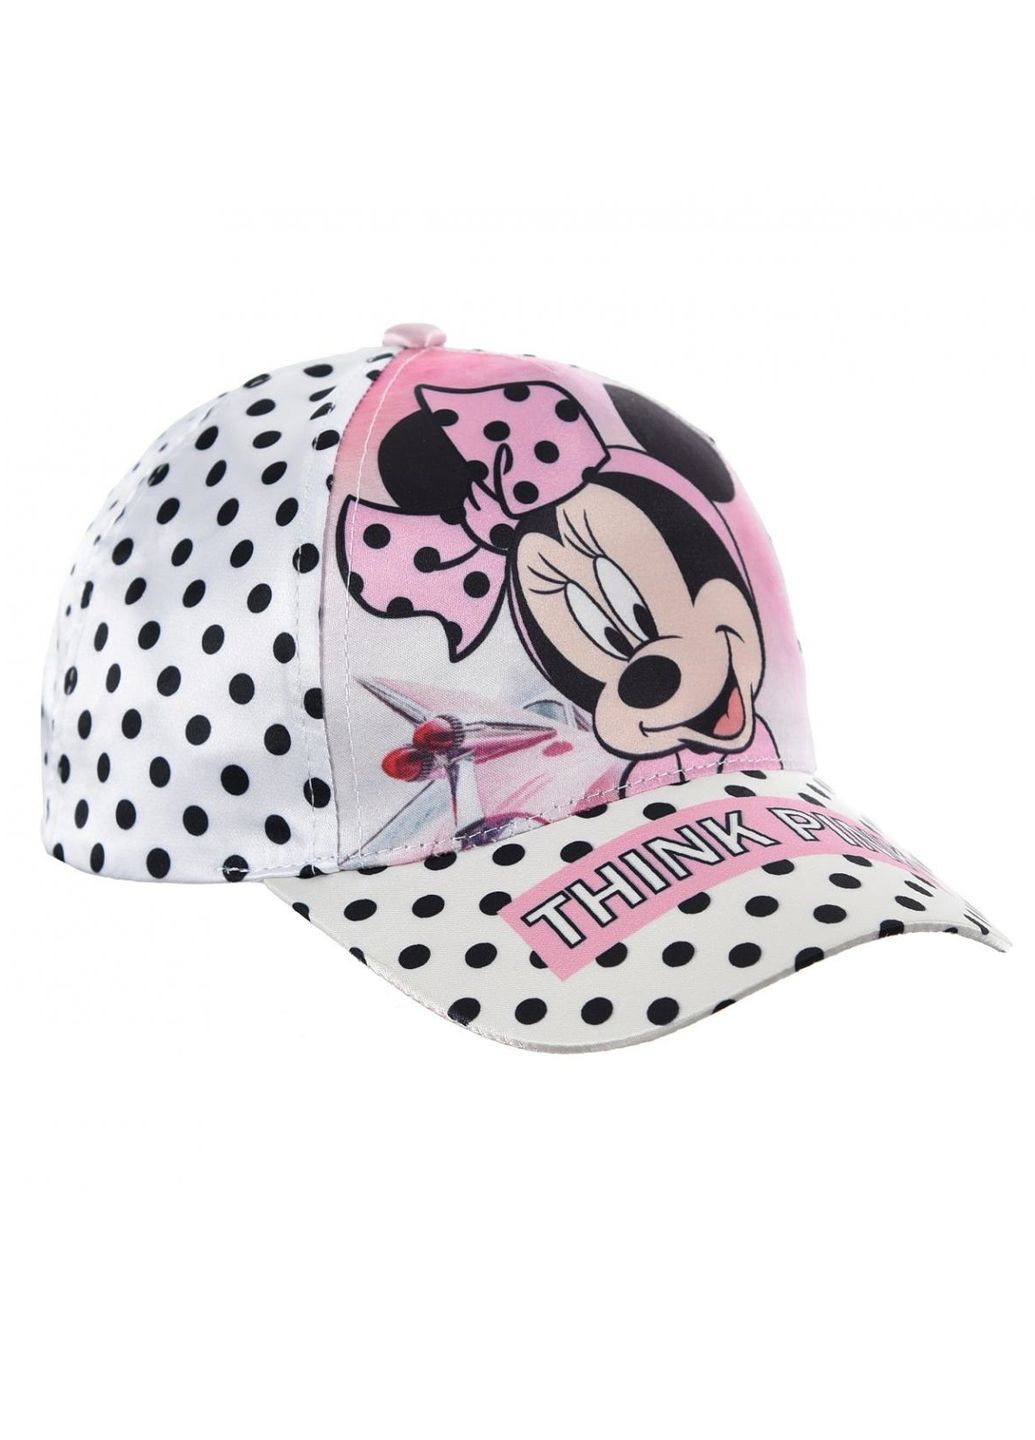 Кепка Minnie Mouse (Минни Маус) UE40272 EU Disney кепка (290887973)